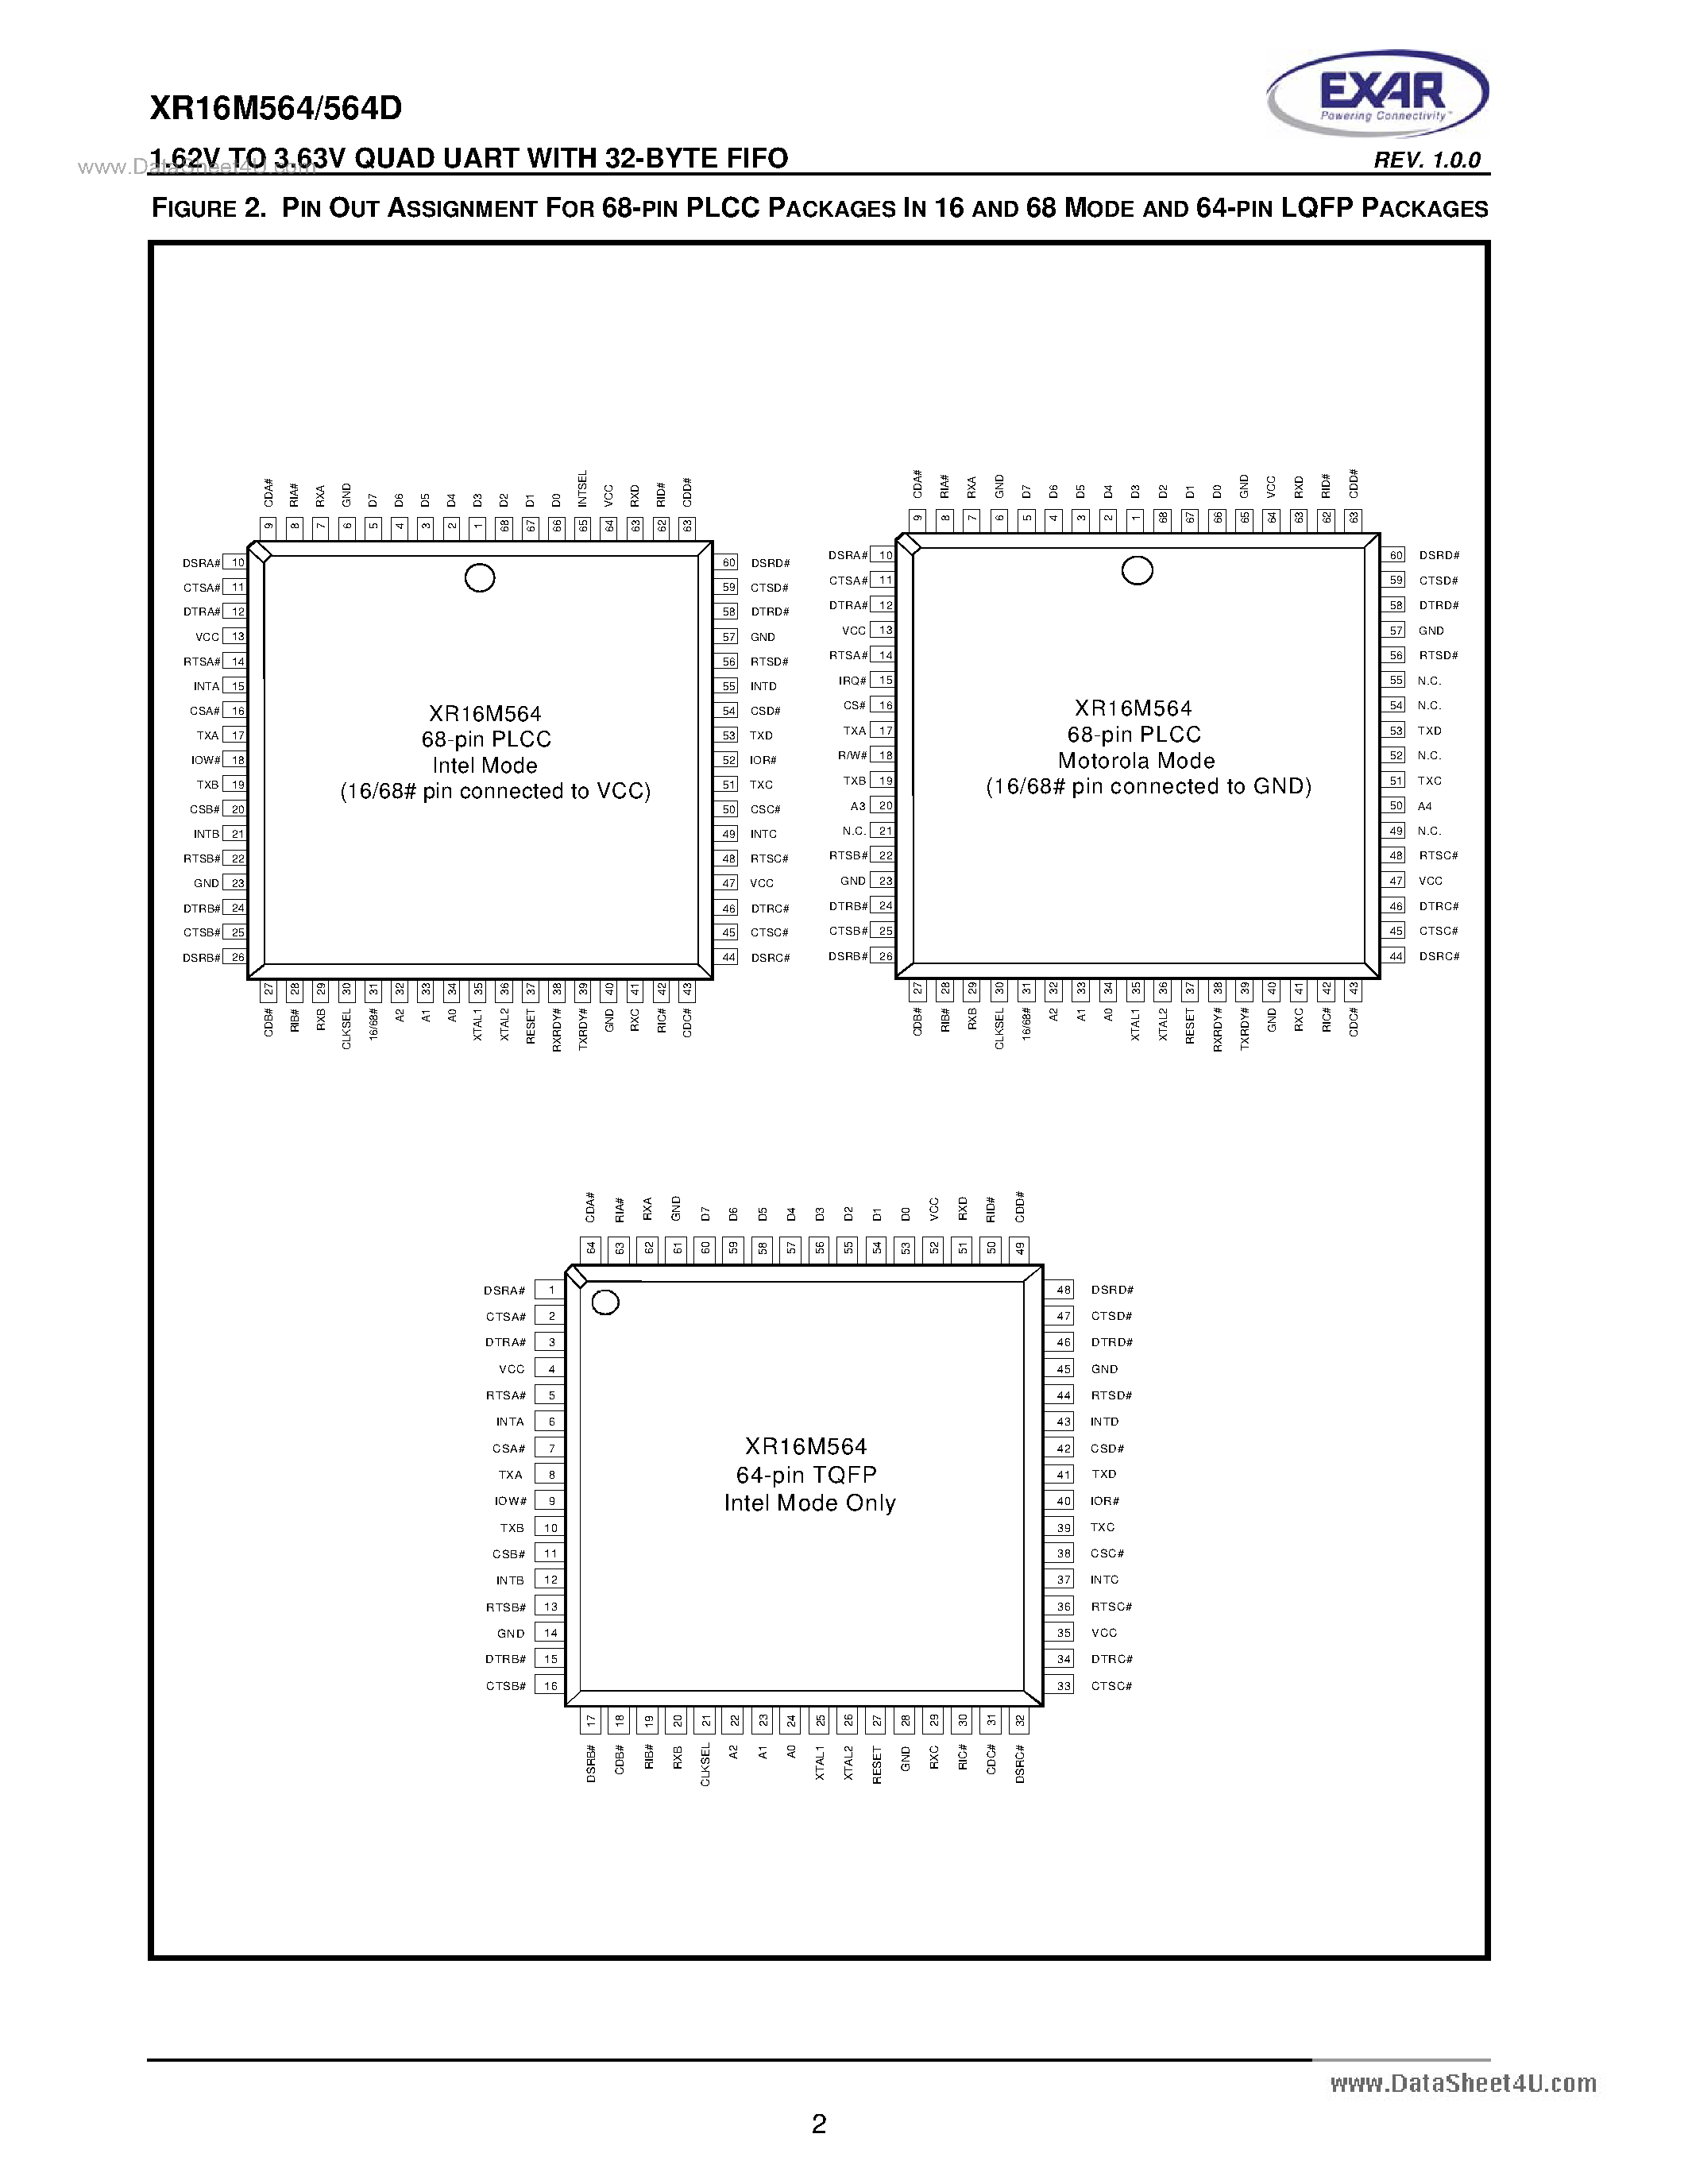 Даташит XR16M564 - 1.62V TO 3.63V Quad UART страница 2